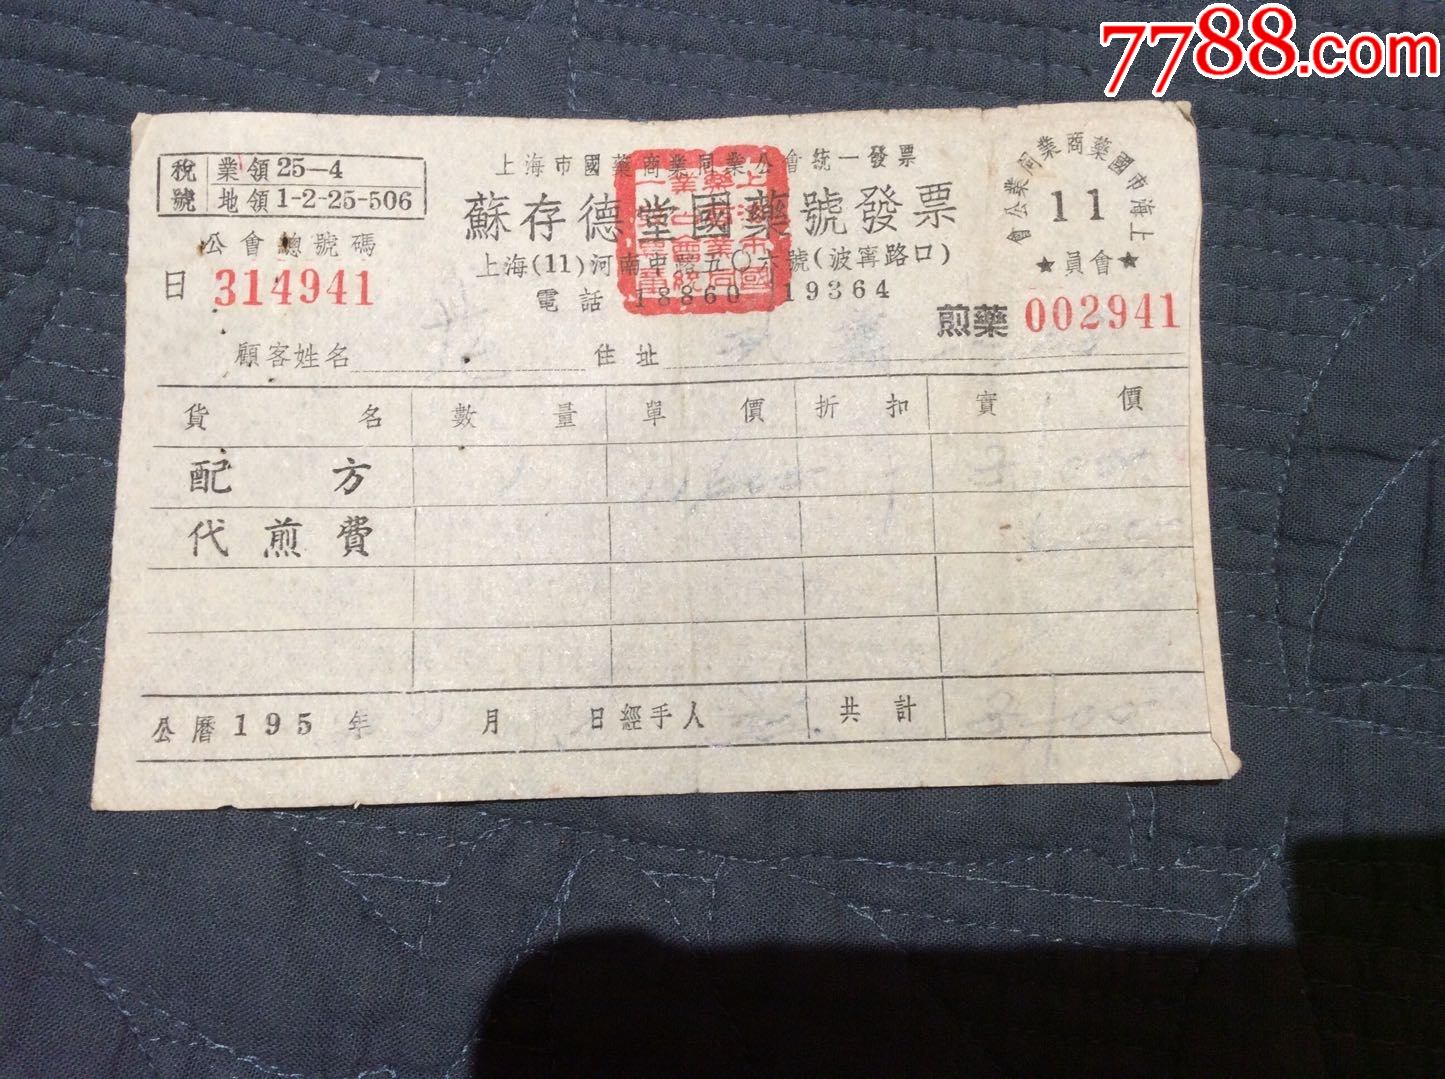 50年代初上海老字号药铺苏存德堂国药号发票有当时配方煎药价格